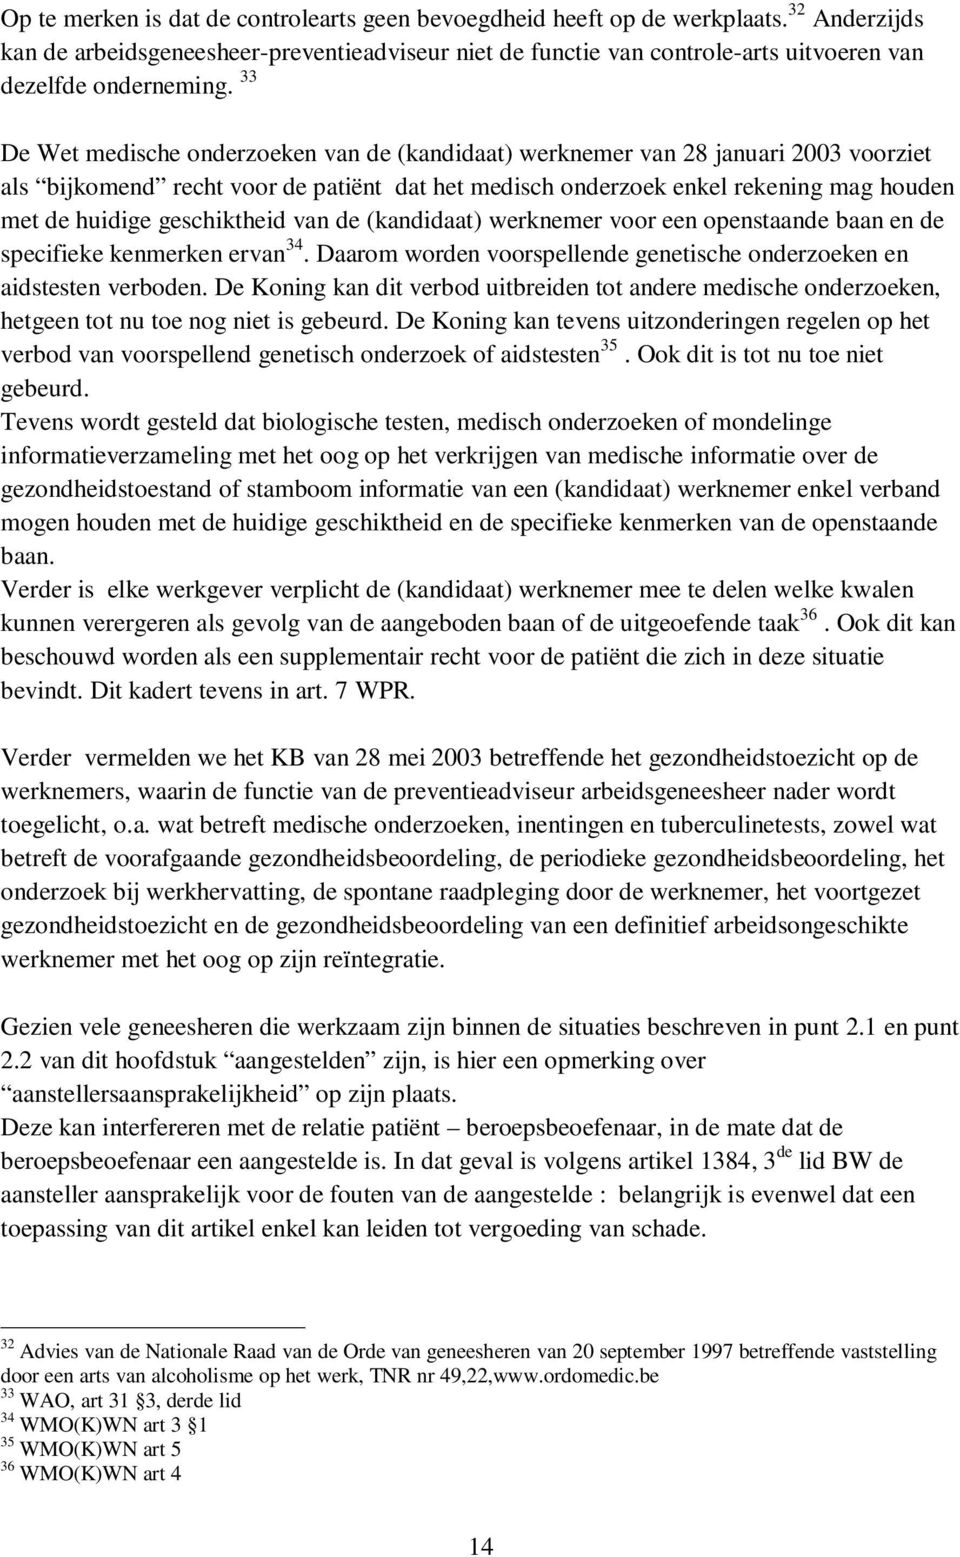 33 De Wet medische onderzoeken van de (kandidaat) werknemer van 28 januari 2003 voorziet als bijkomend recht voor de patiënt dat het medisch onderzoek enkel rekening mag houden met de huidige